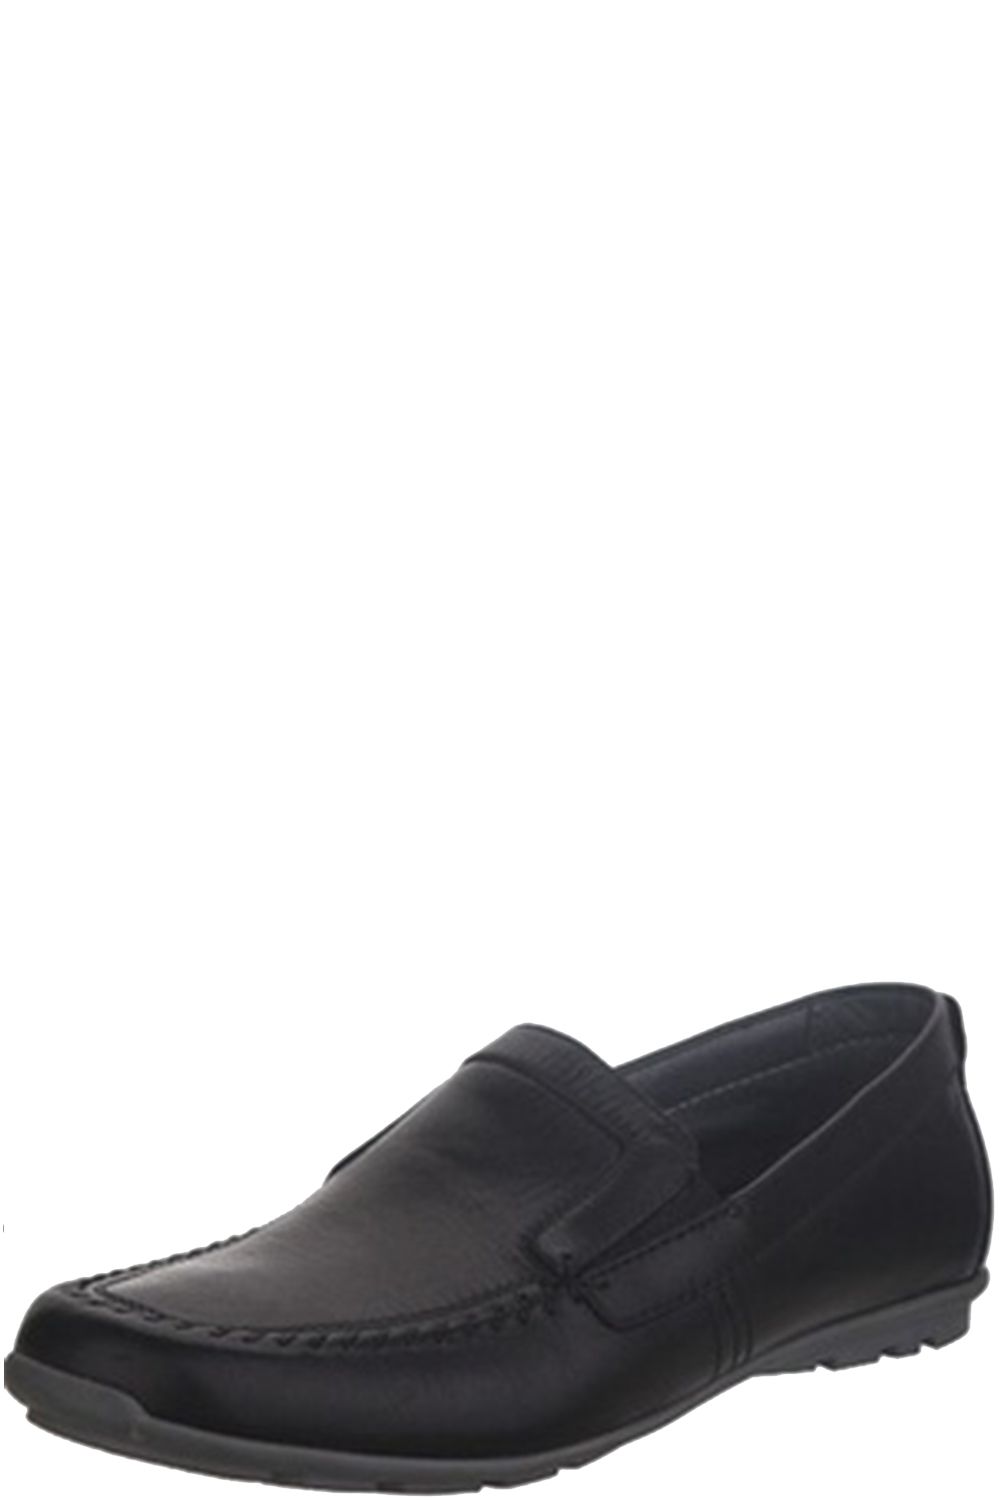 Туфли Kapika, размер 35, цвет черный - фото 1